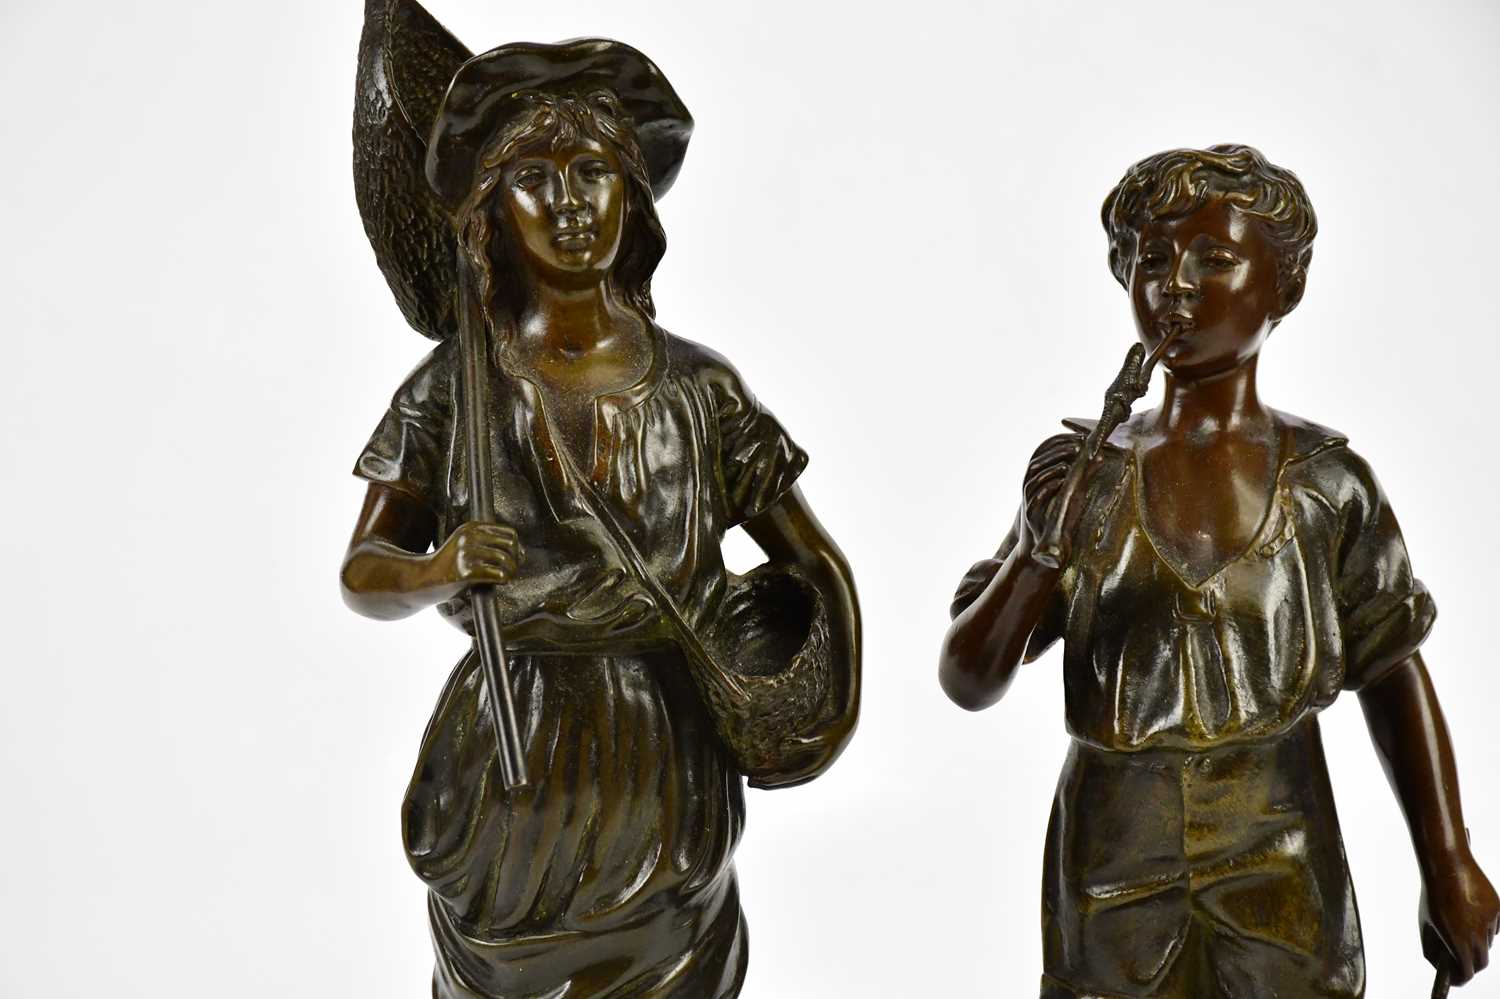 J GARNIER; a bronze figure, 'Pecheuse de Crevettes', height 32cm, and a further bronze figure - Bild 2 aus 5